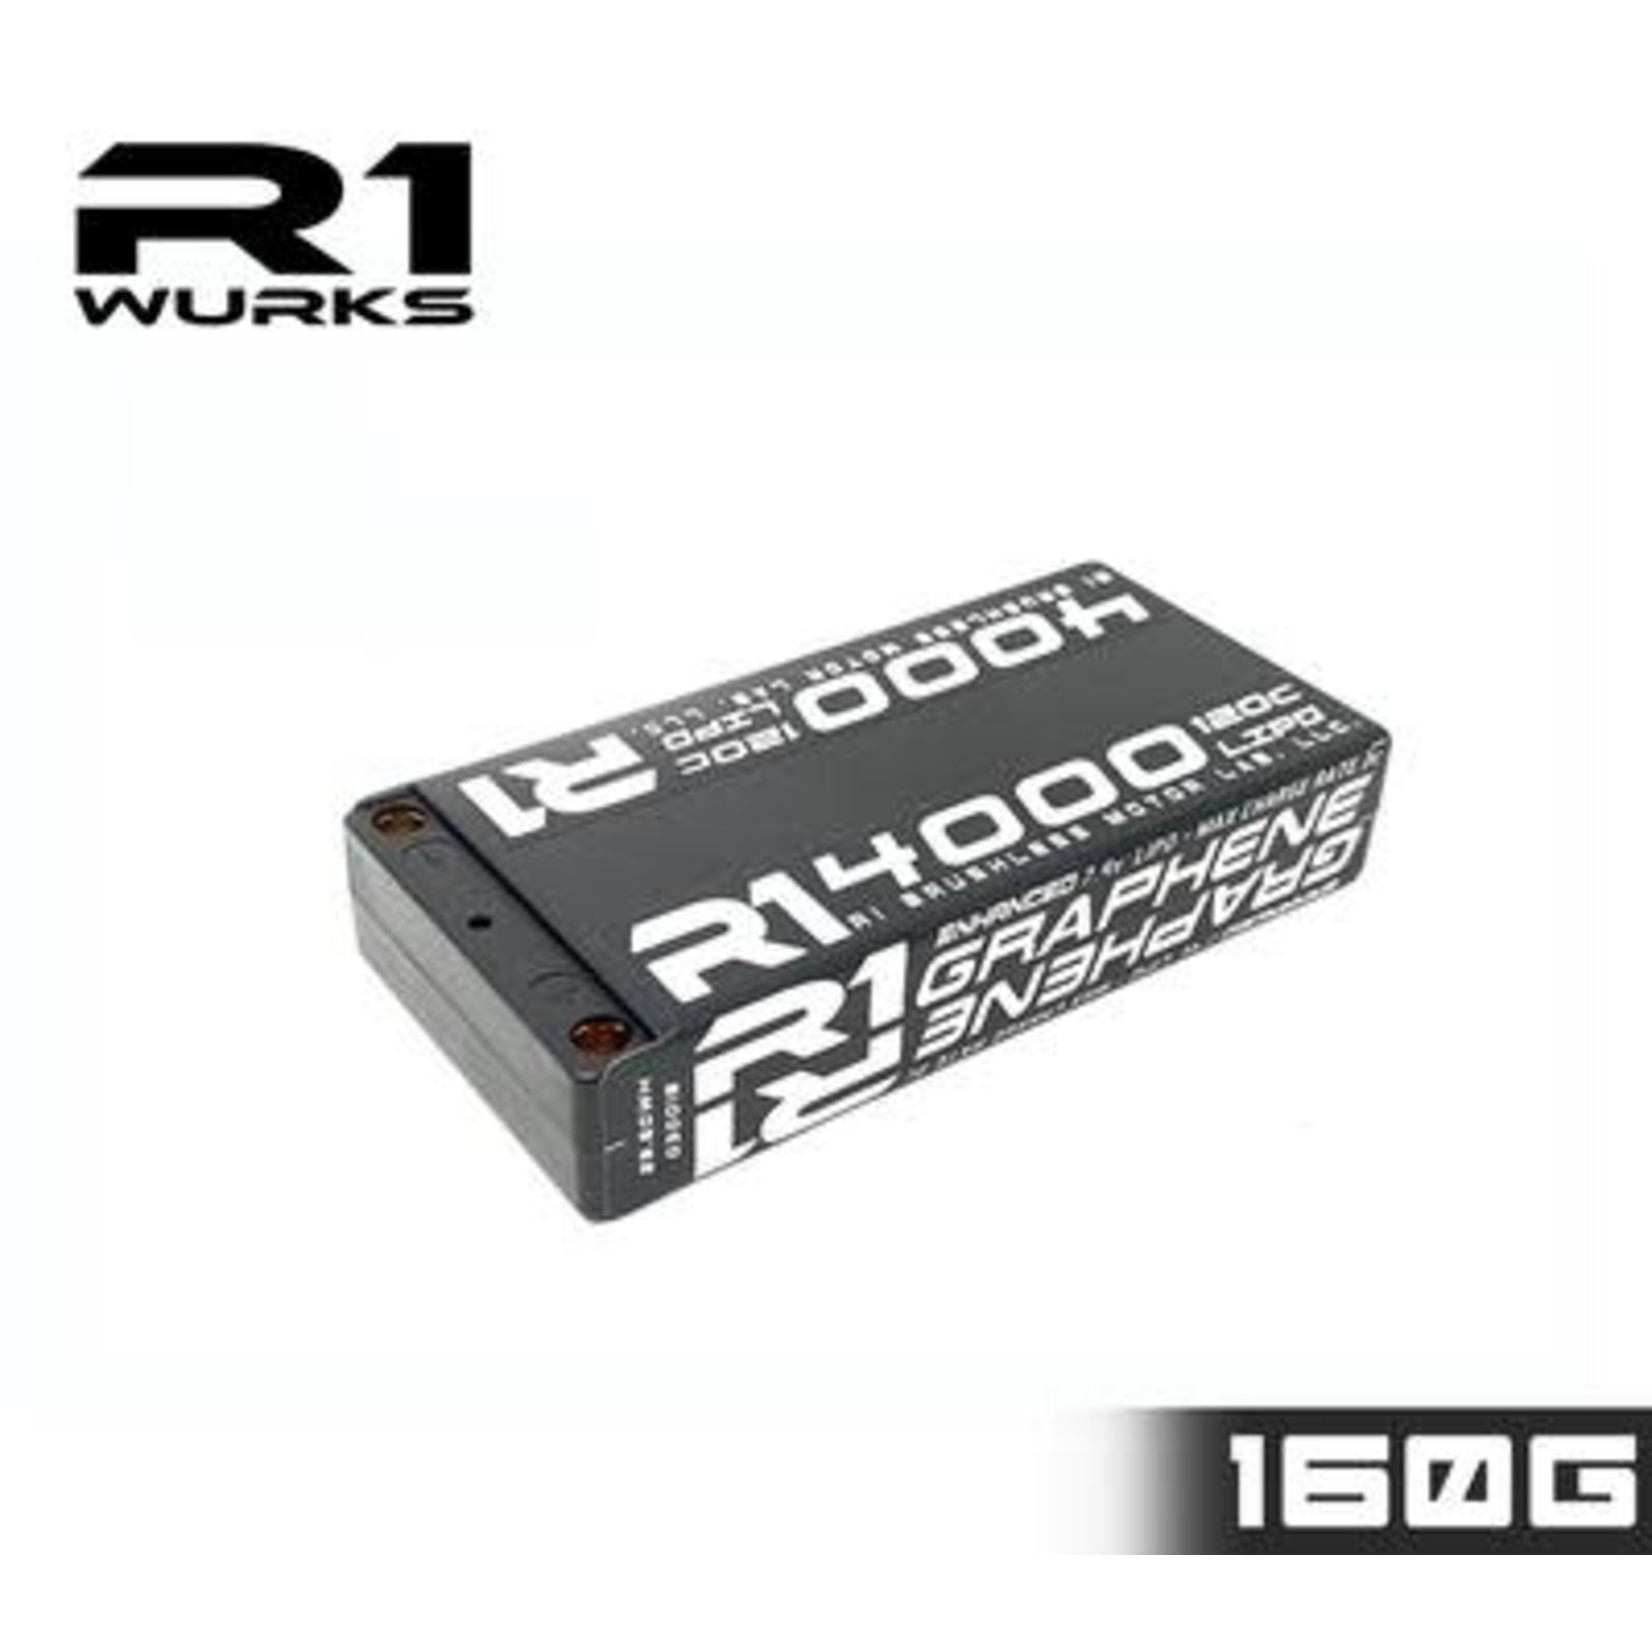 R1 Wurks R1 Wurks 4000mAh 120C 7.4V 2S LiPo Enhanced Graphene Shorty Battery #030018-2